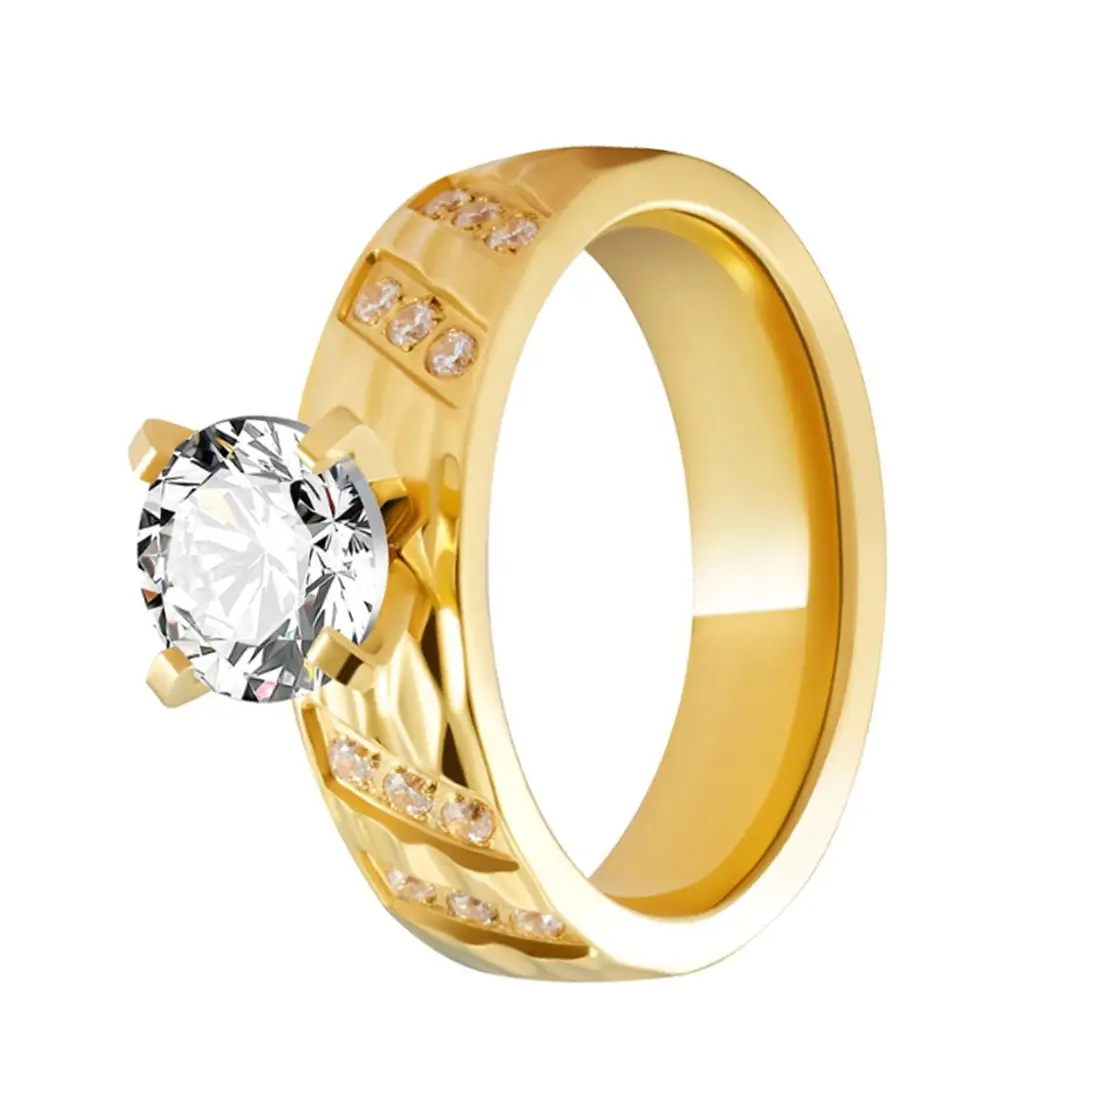 カスタム3pcs18kゴールド充填メッキ婚約指輪ダイヤモンドキュービックジルコニア恋人のカップル結婚指輪ジュエリー女性